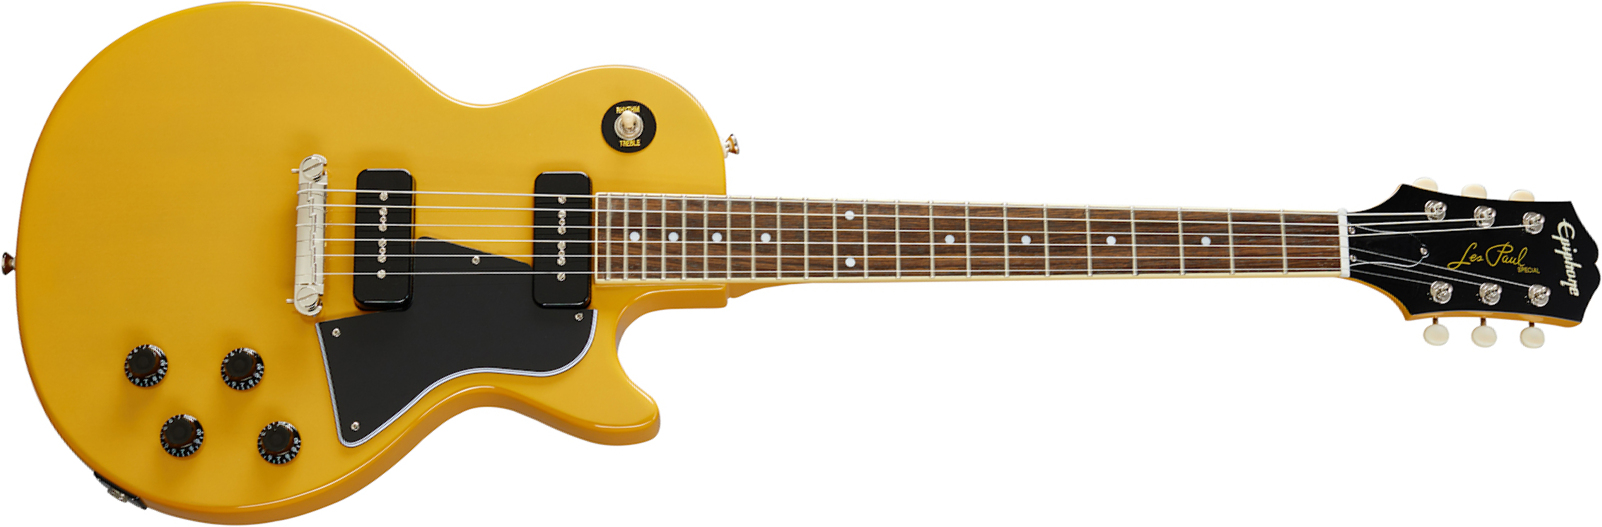 Epiphone Les Paul Special 2p90 Ht Lau - Tv Yellow - Guitarra eléctrica de corte único. - Main picture